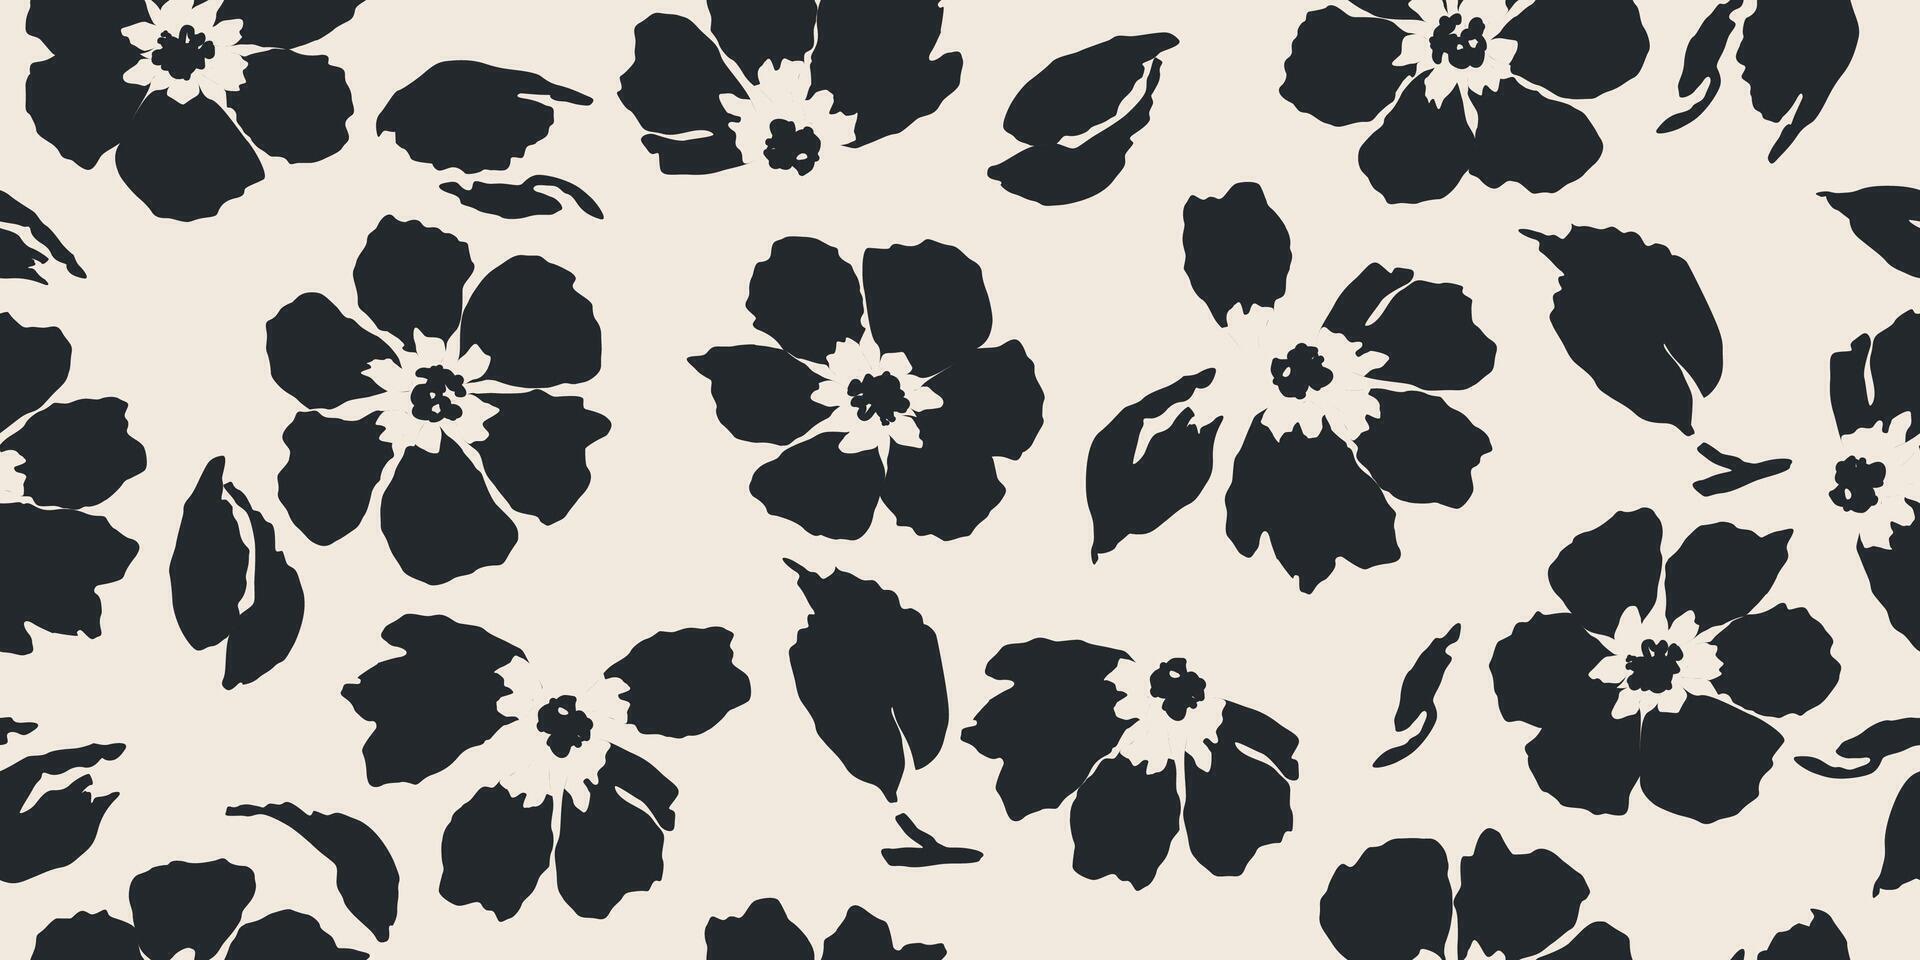 blomma sömlös mönster . organisk former abstrakt blommig bakgrund. modern skriva ut i svart och vit färger för textil- design, tyg, tapet, täcker, kort, vägg konst, posters och dekoration. vektor